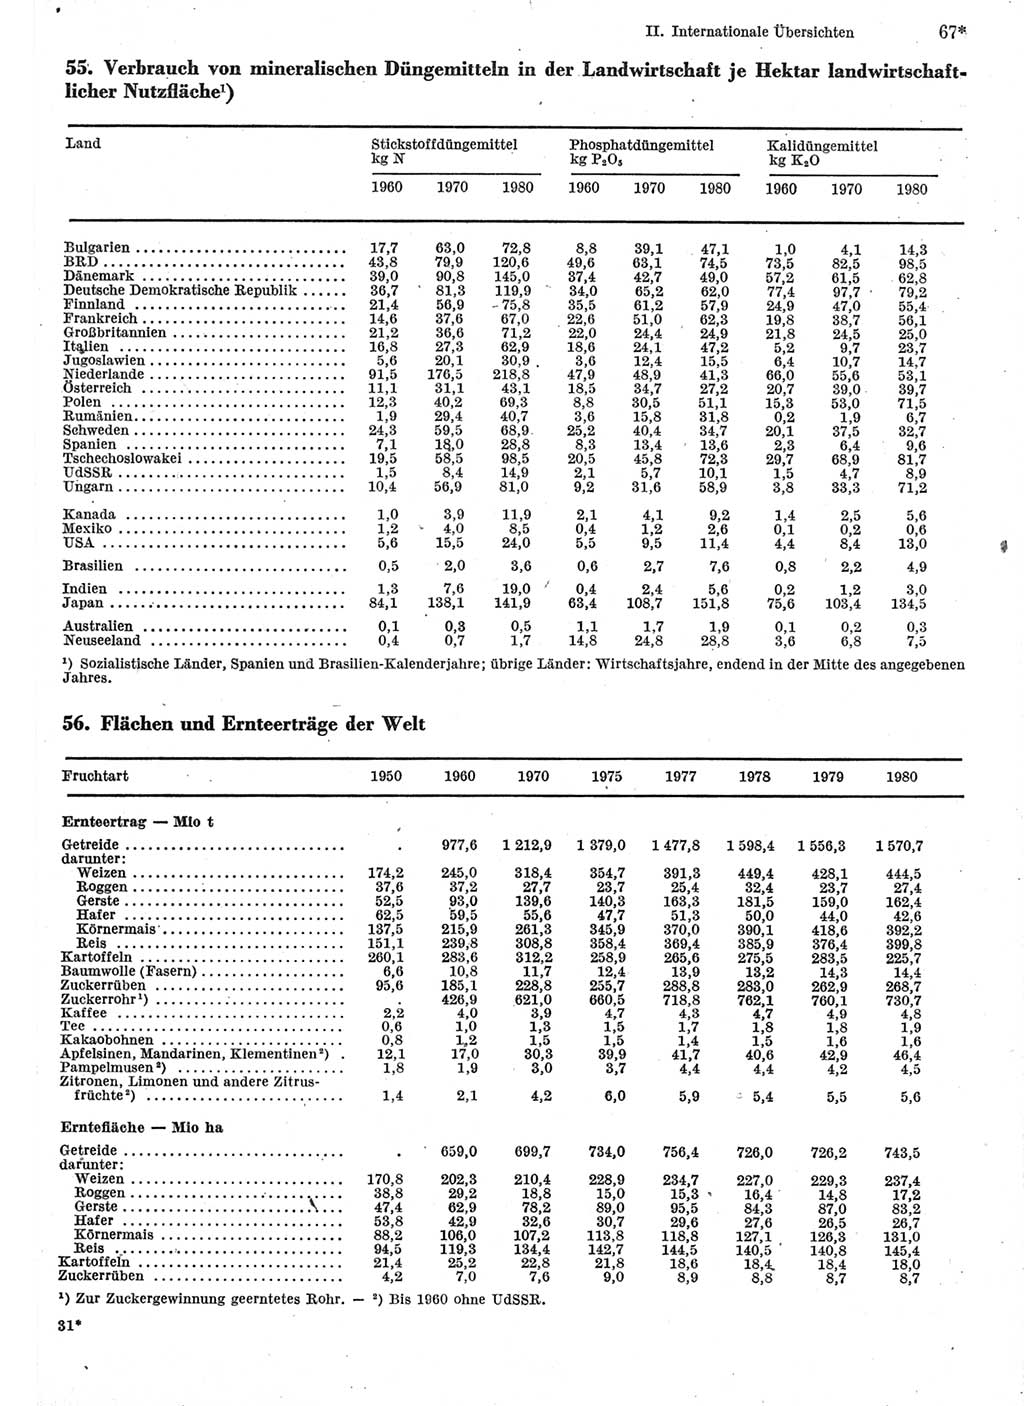 Statistisches Jahrbuch der Deutschen Demokratischen Republik (DDR) 1982, Seite 67 (Stat. Jb. DDR 1982, S. 67)